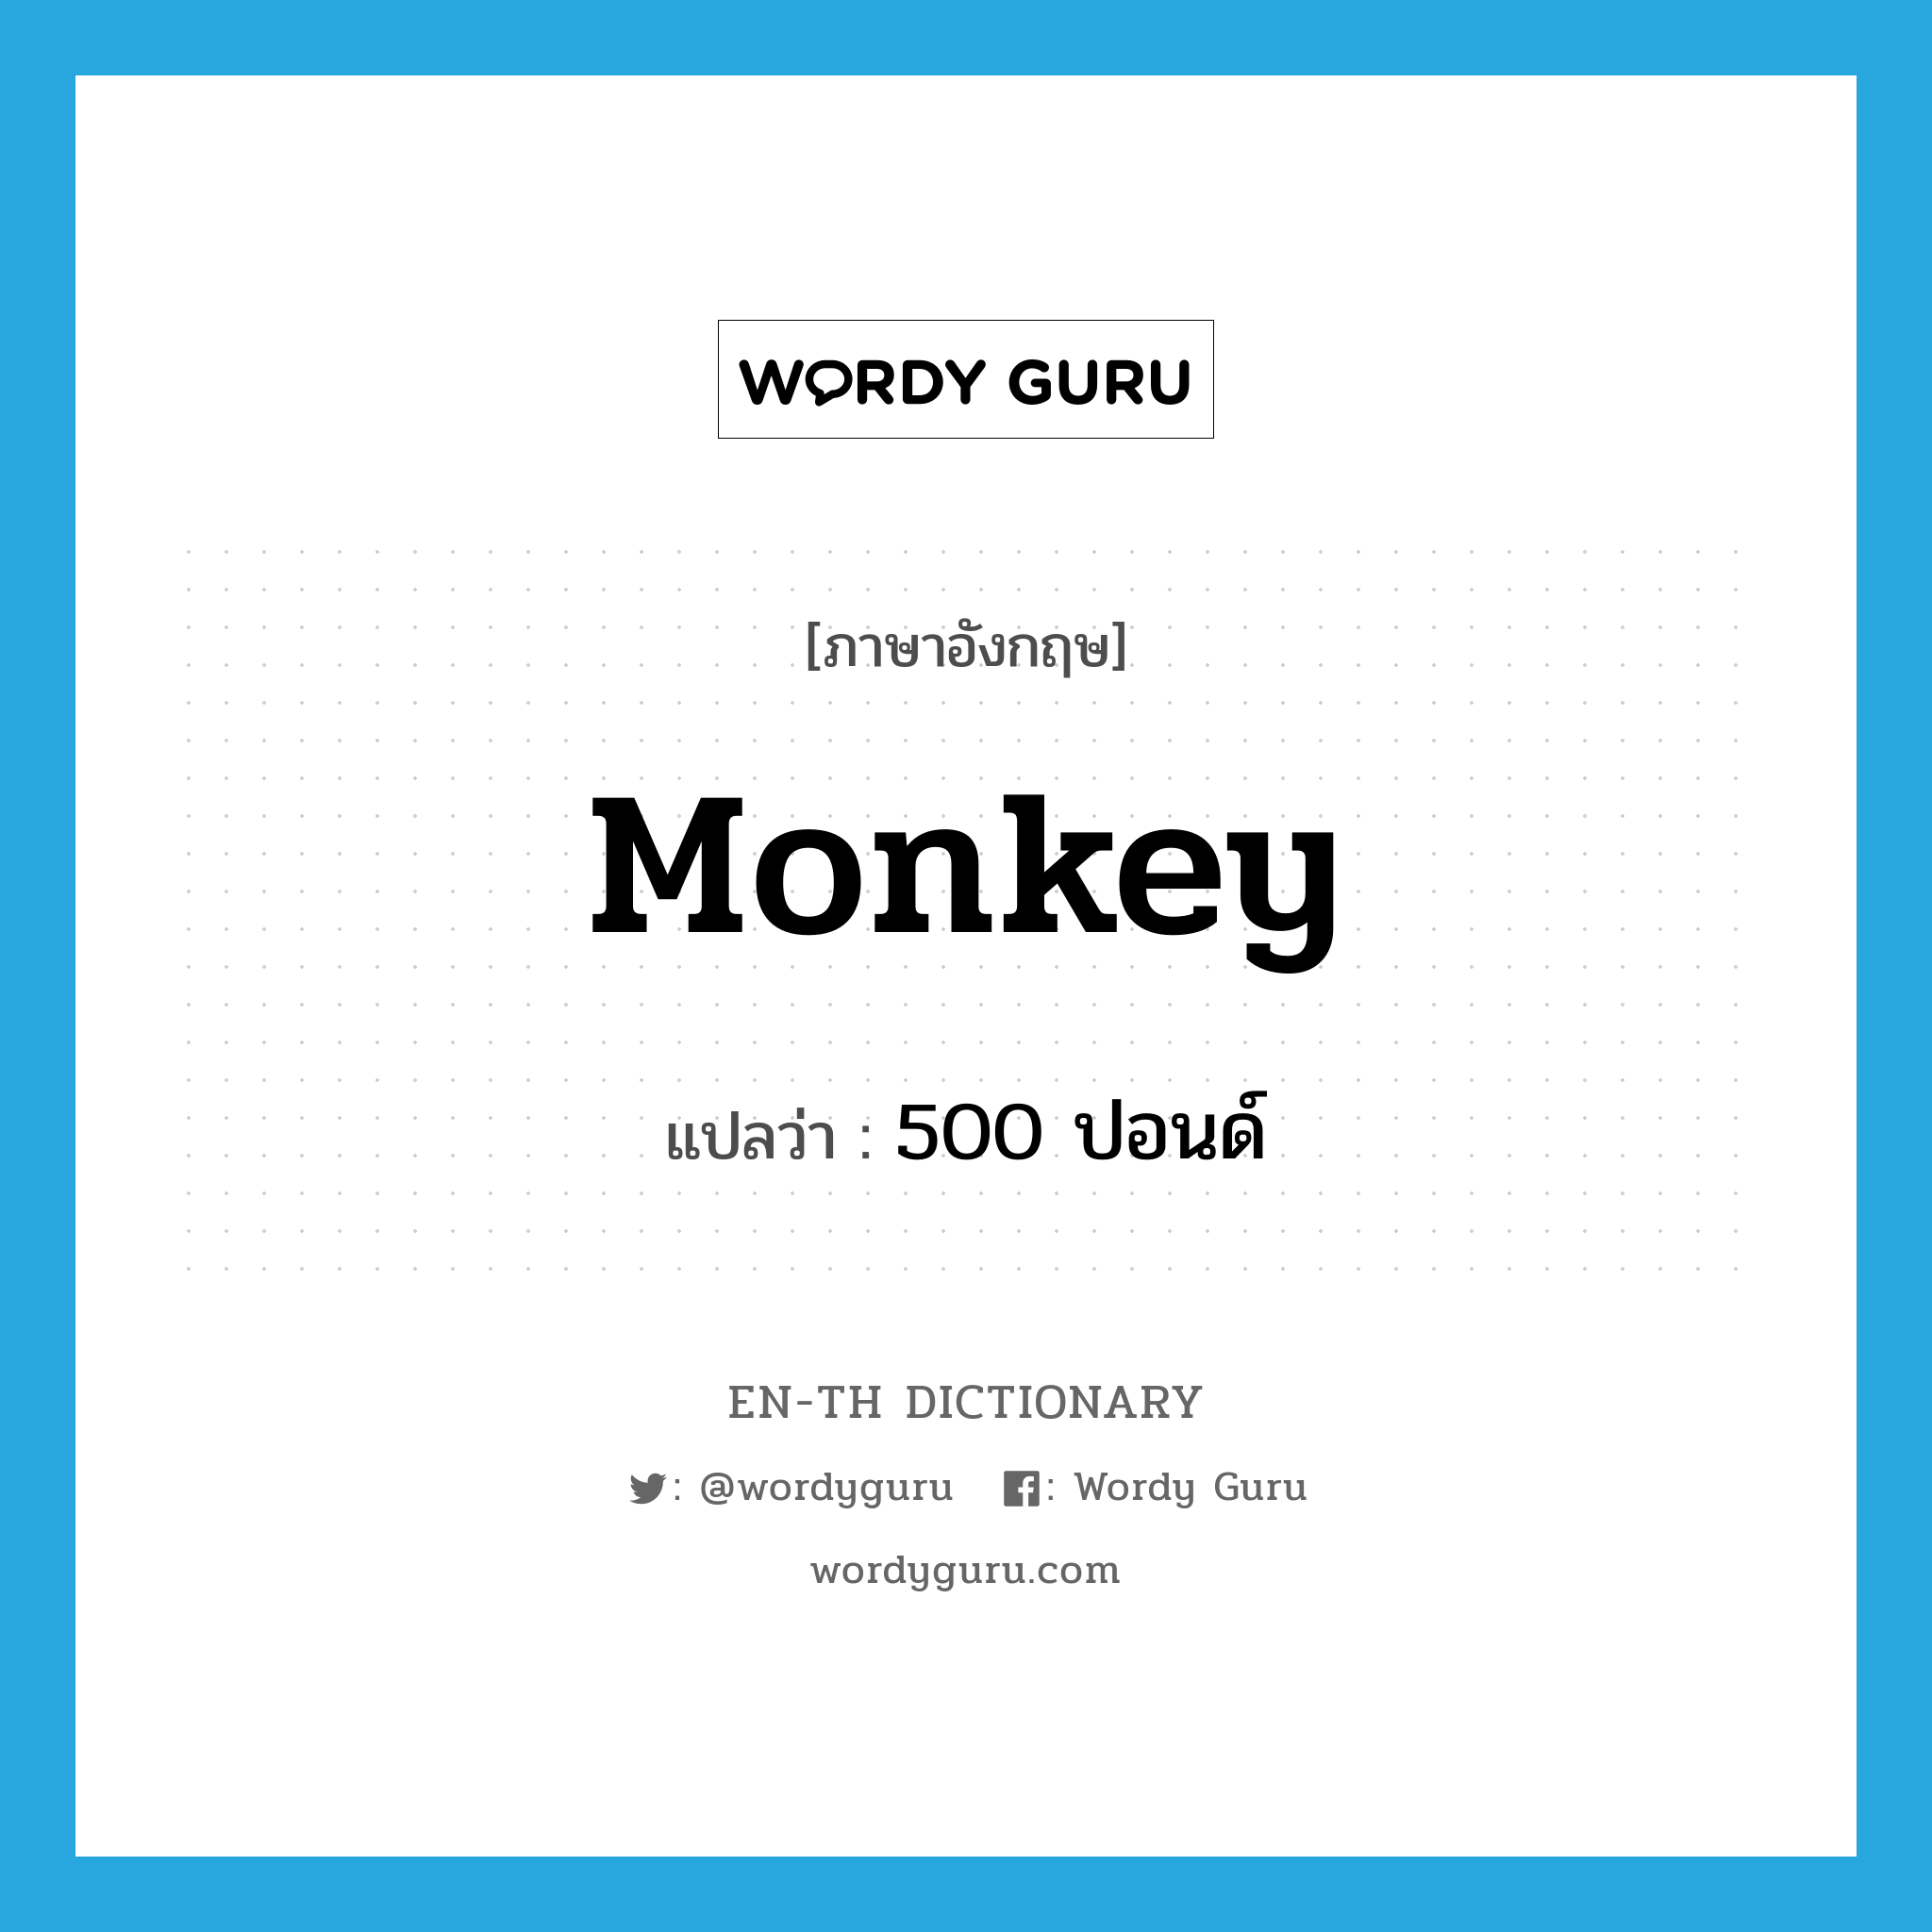 500 ปอนด์ ภาษาอังกฤษ?, คำศัพท์ภาษาอังกฤษ 500 ปอนด์ แปลว่า monkey ประเภท SL หมวด SL